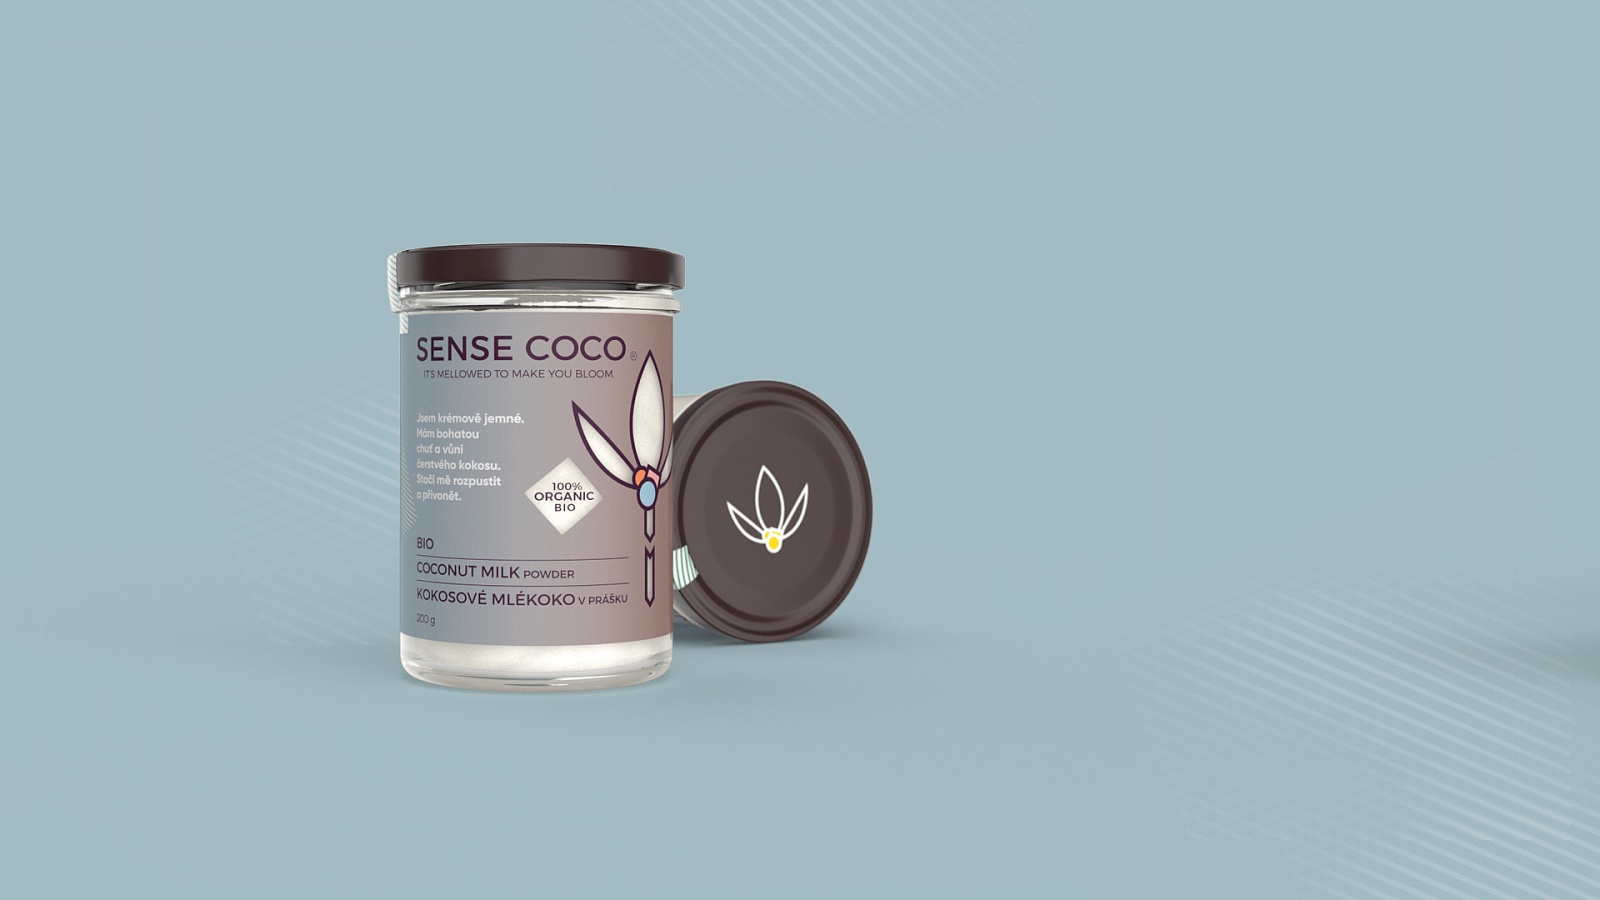 BIO kokosové mlékoko v prášku - rychlý zdroj energie